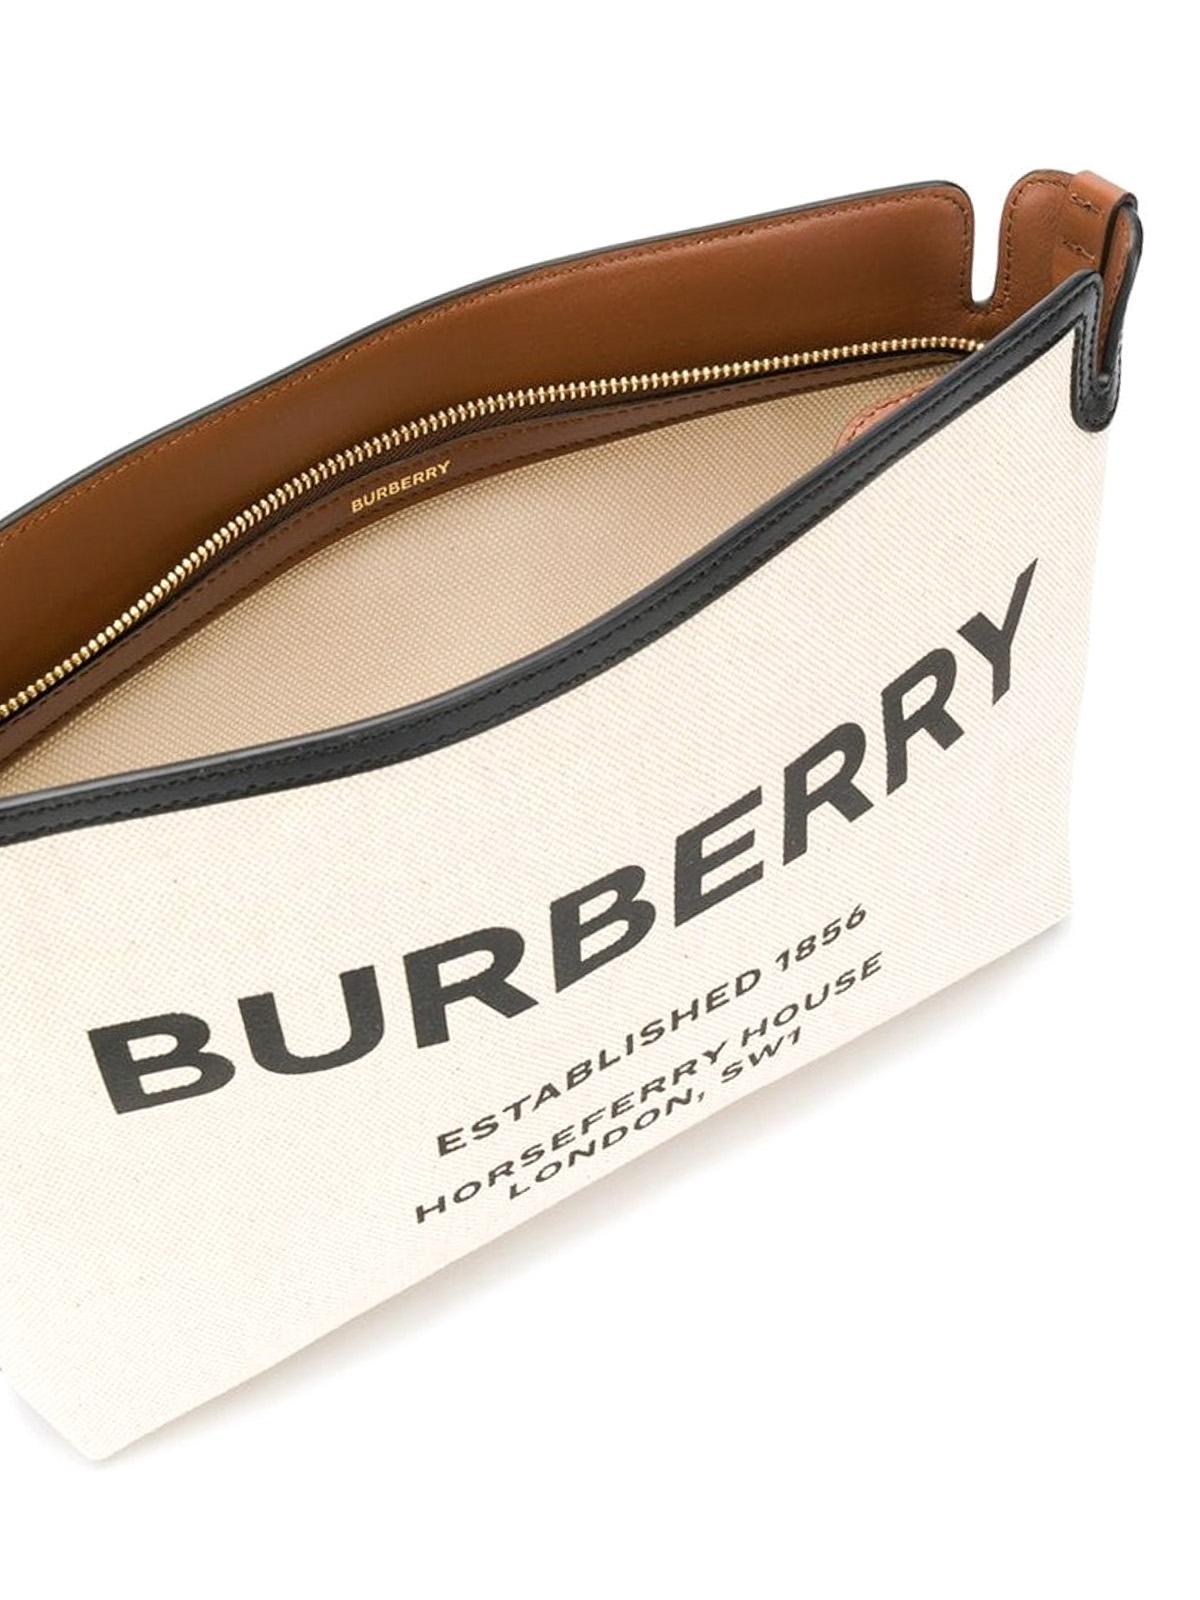 burberry established 1856